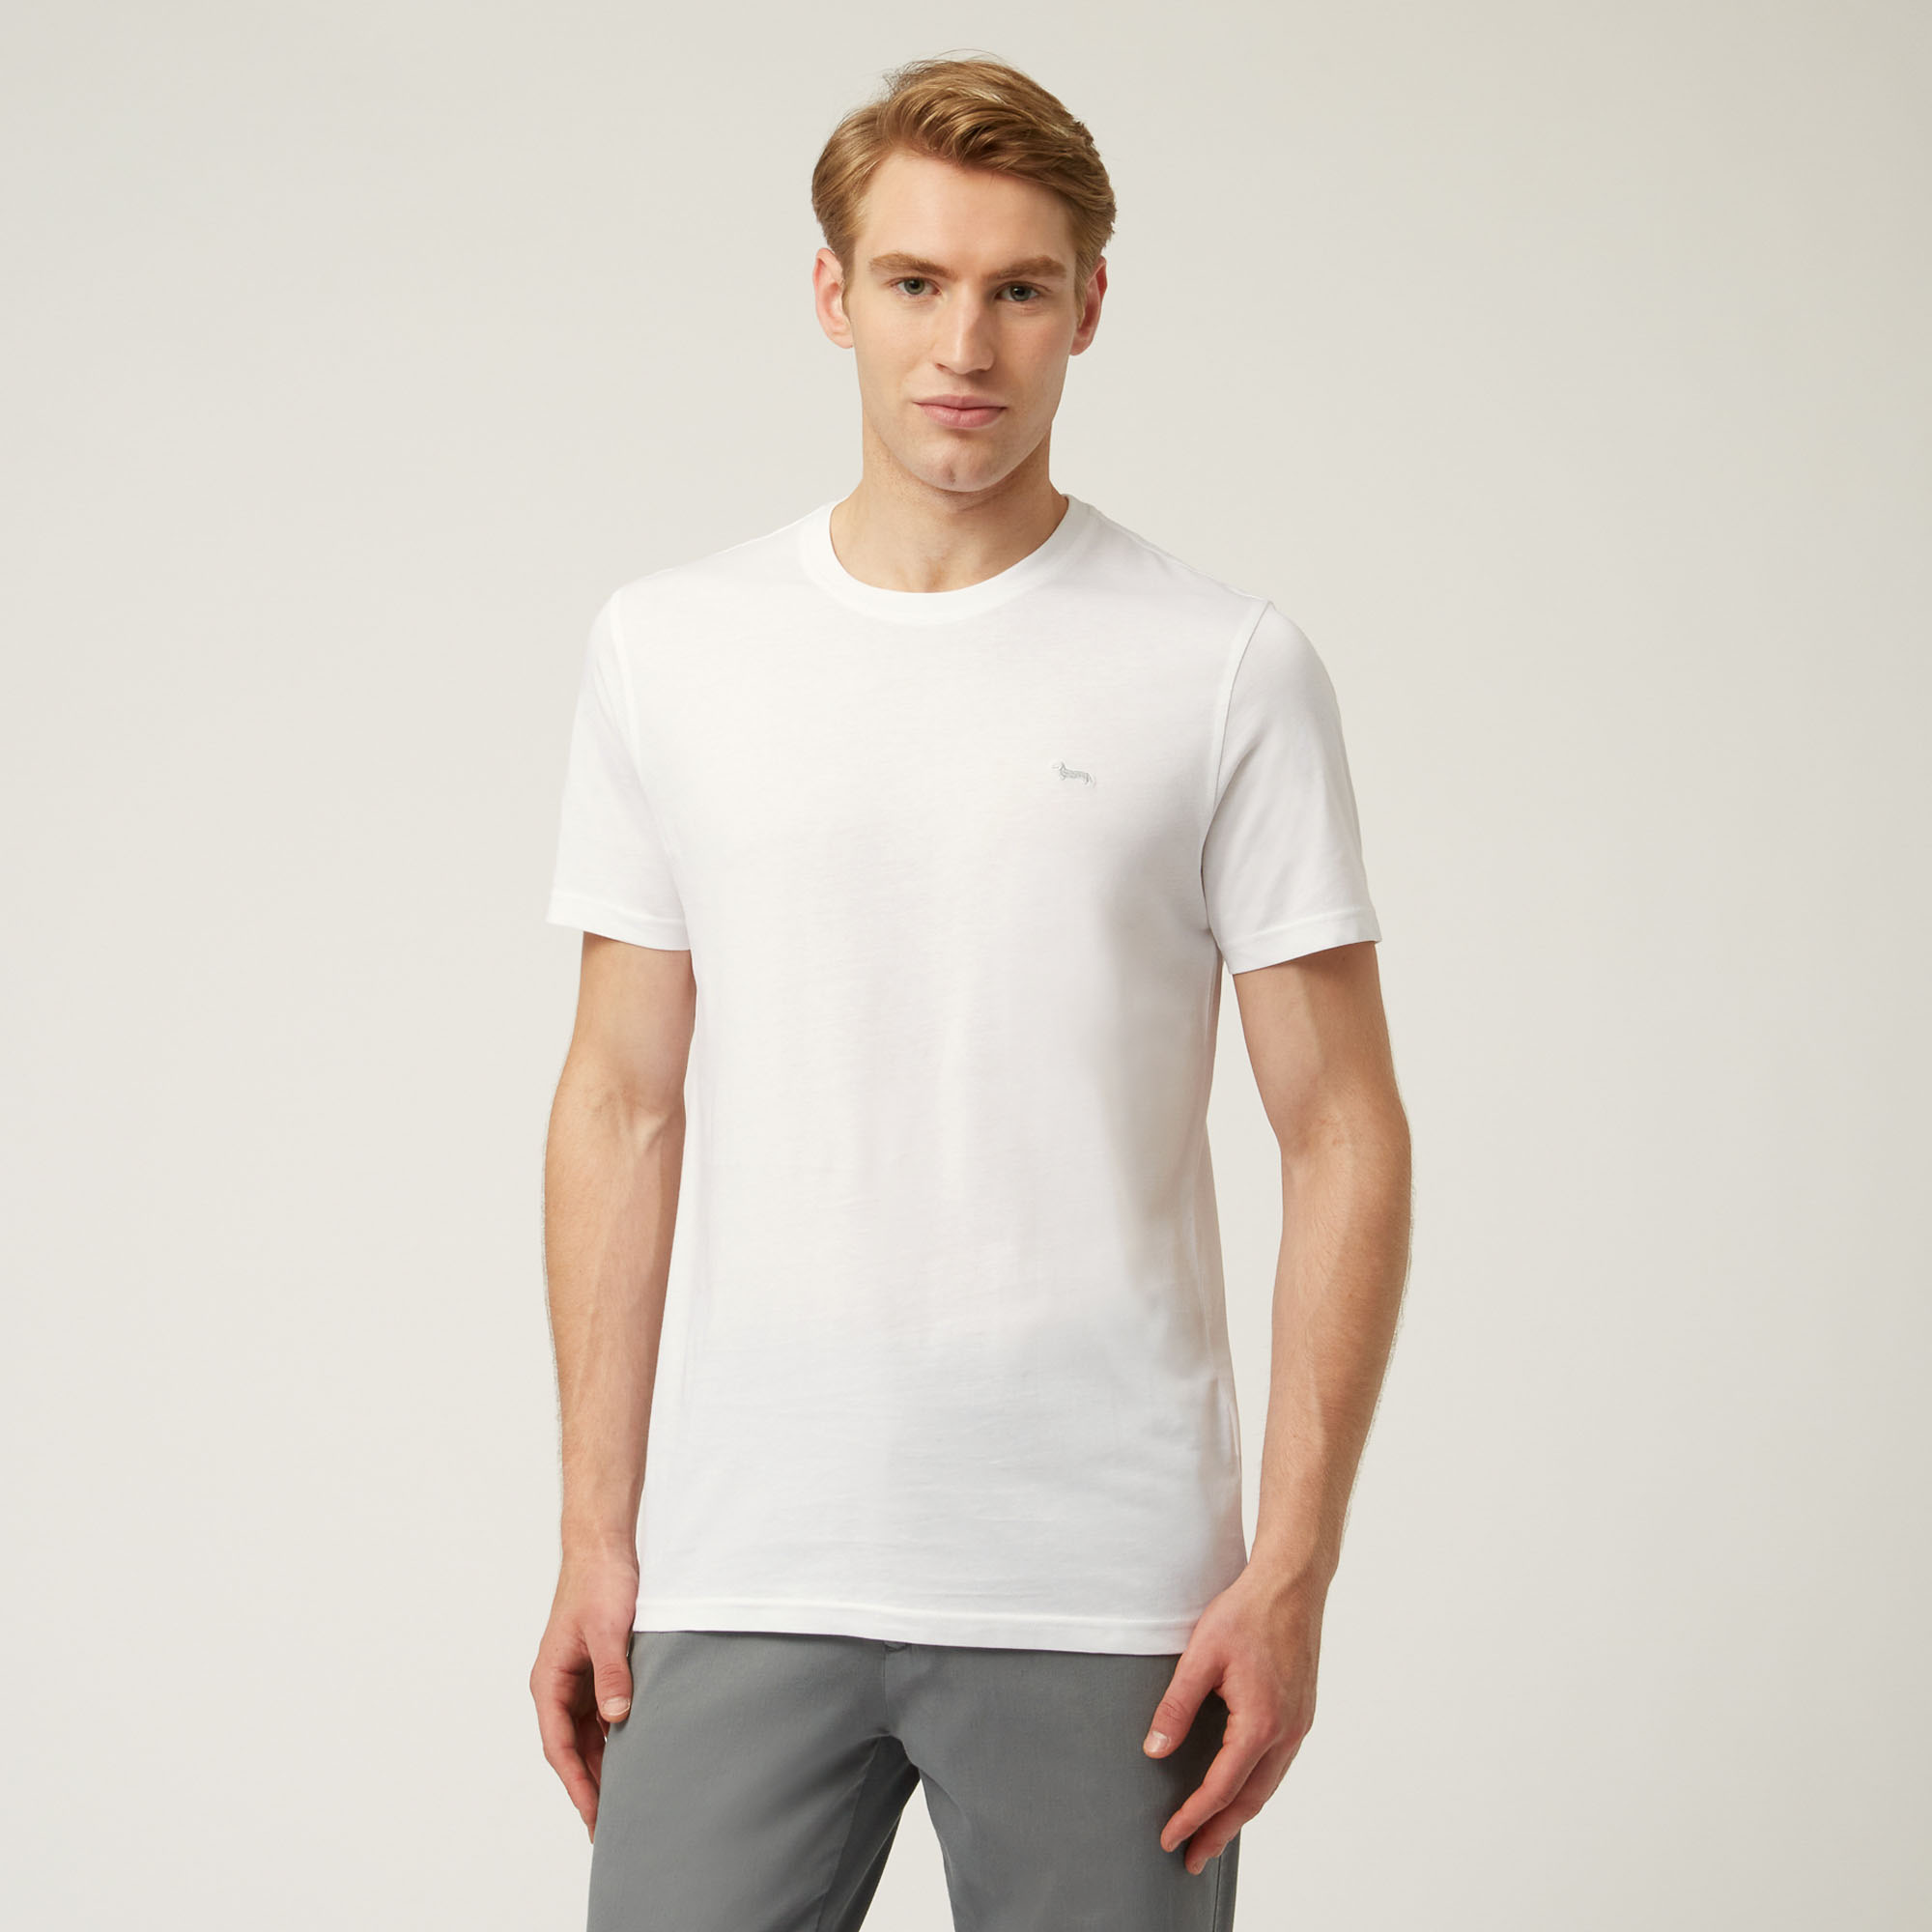 Einfarbiges Essentials t shirt aus baumwolle, Weiß, large